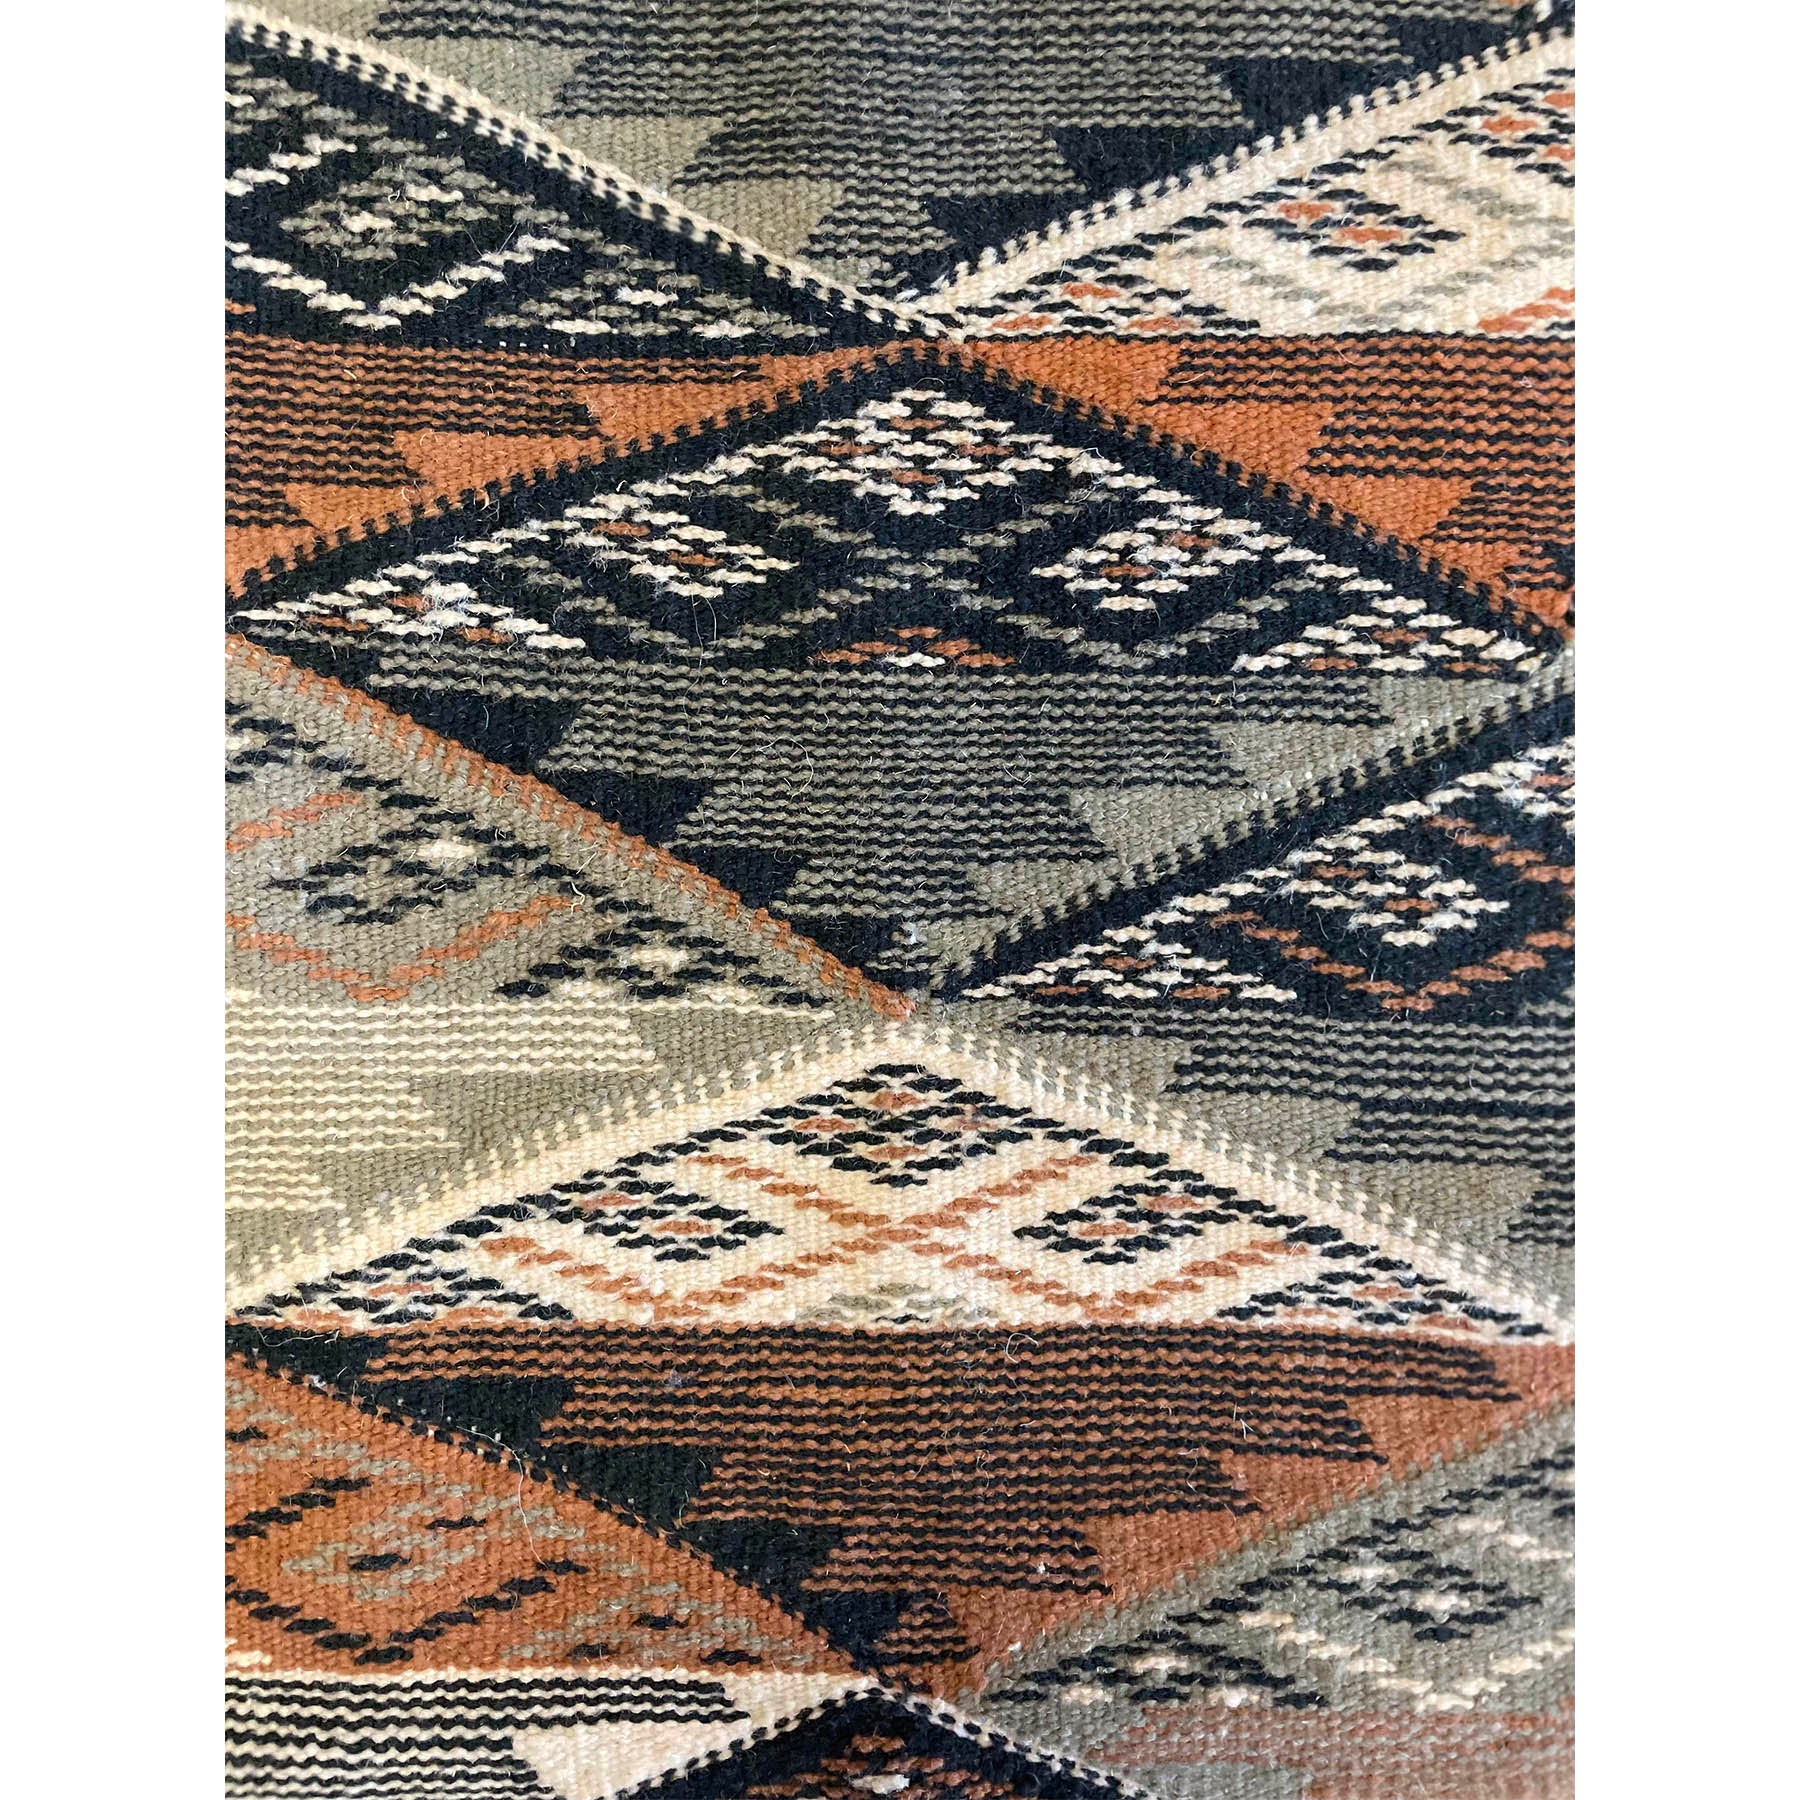 Tribal Kharita style Moroccan berber flatweave rug - Kantara | Moroccan Rugs